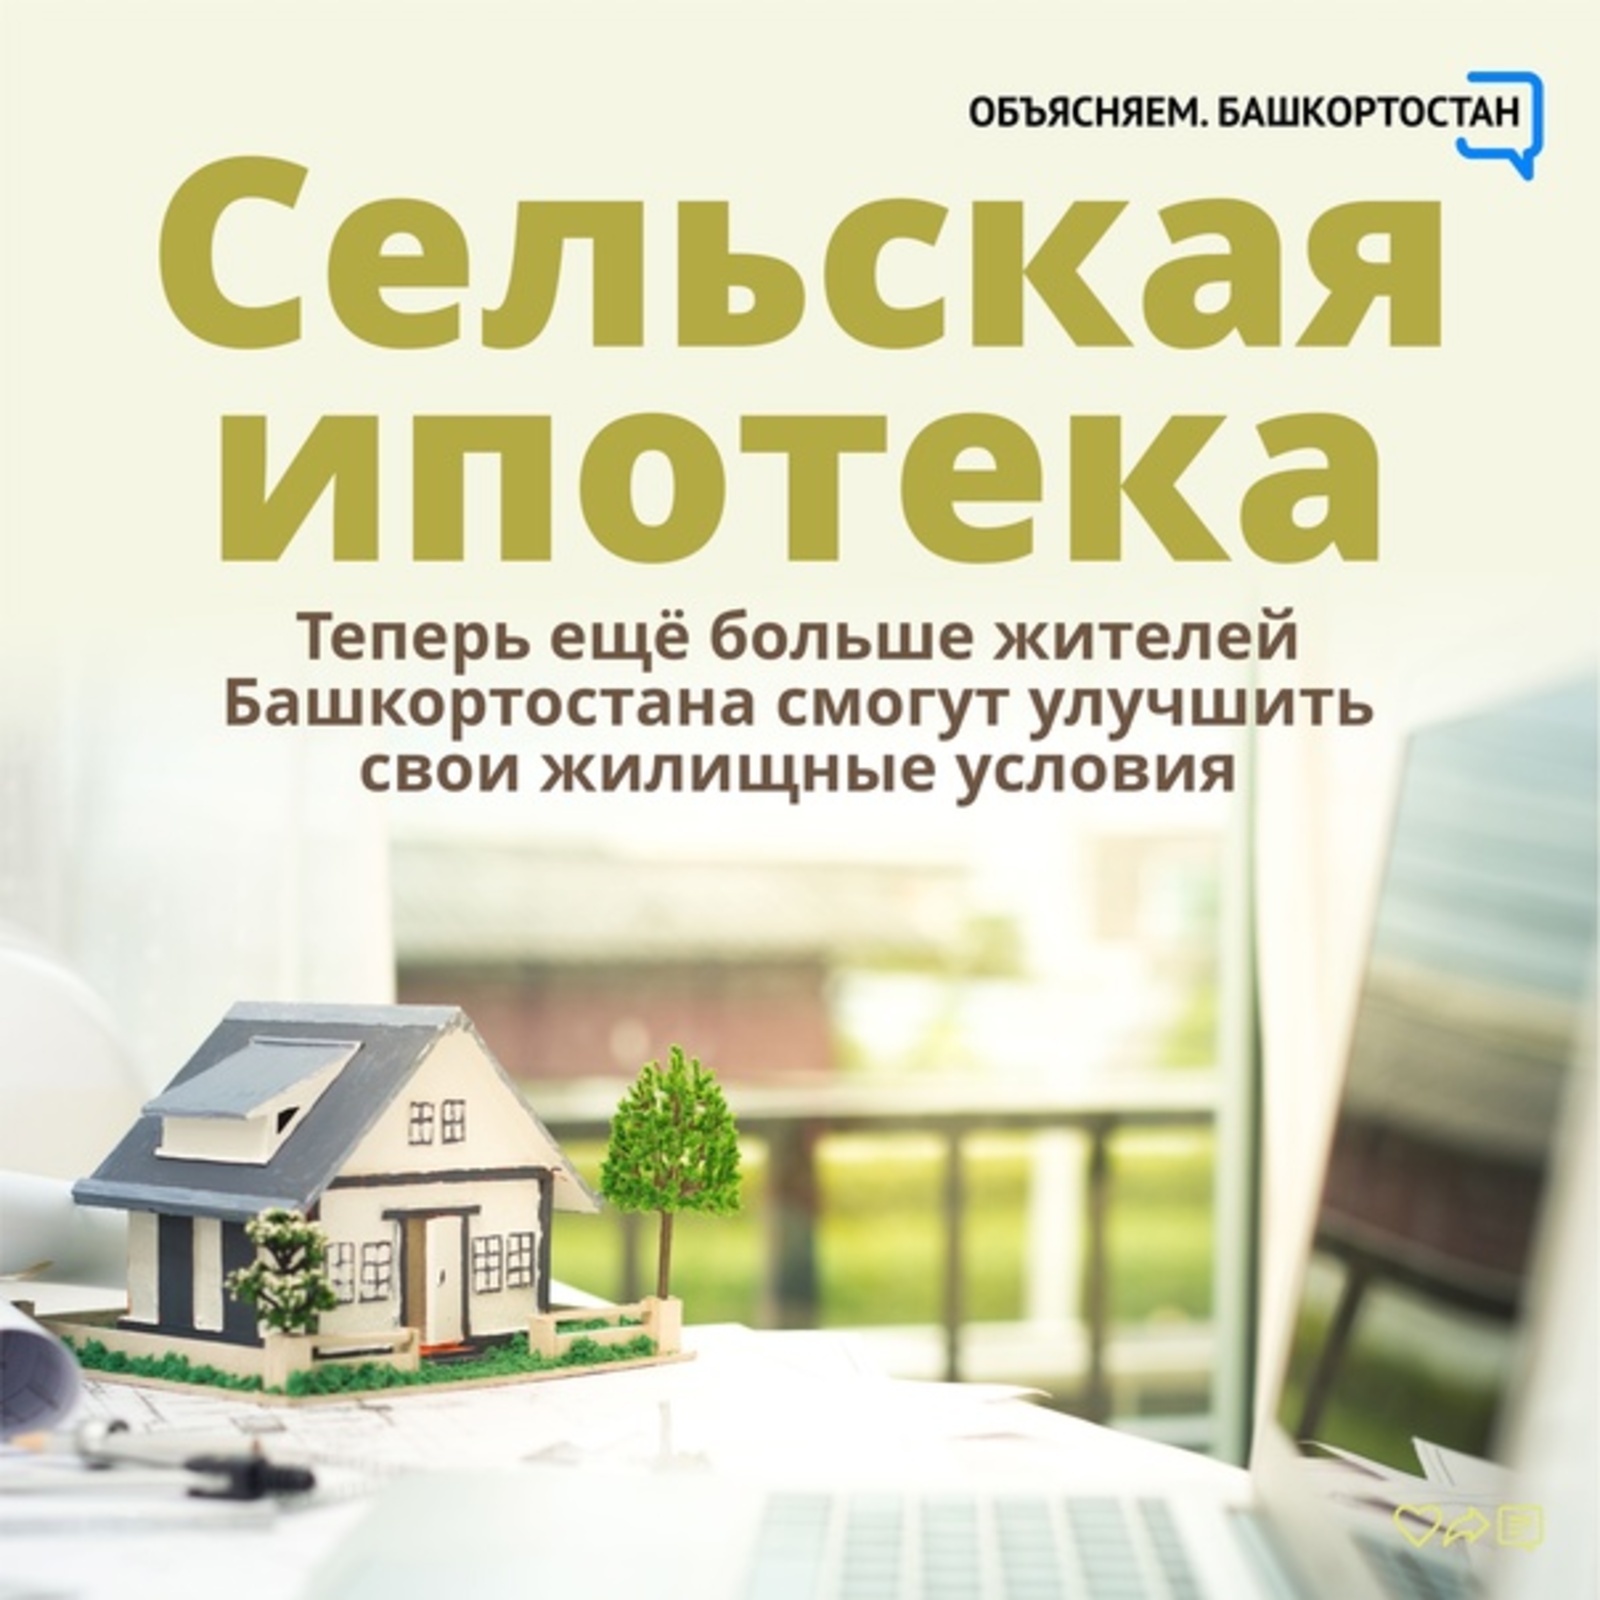 Благодаря «Сельской ипотеке» жители Башкортостана смогут улучшить свои жилищные условия